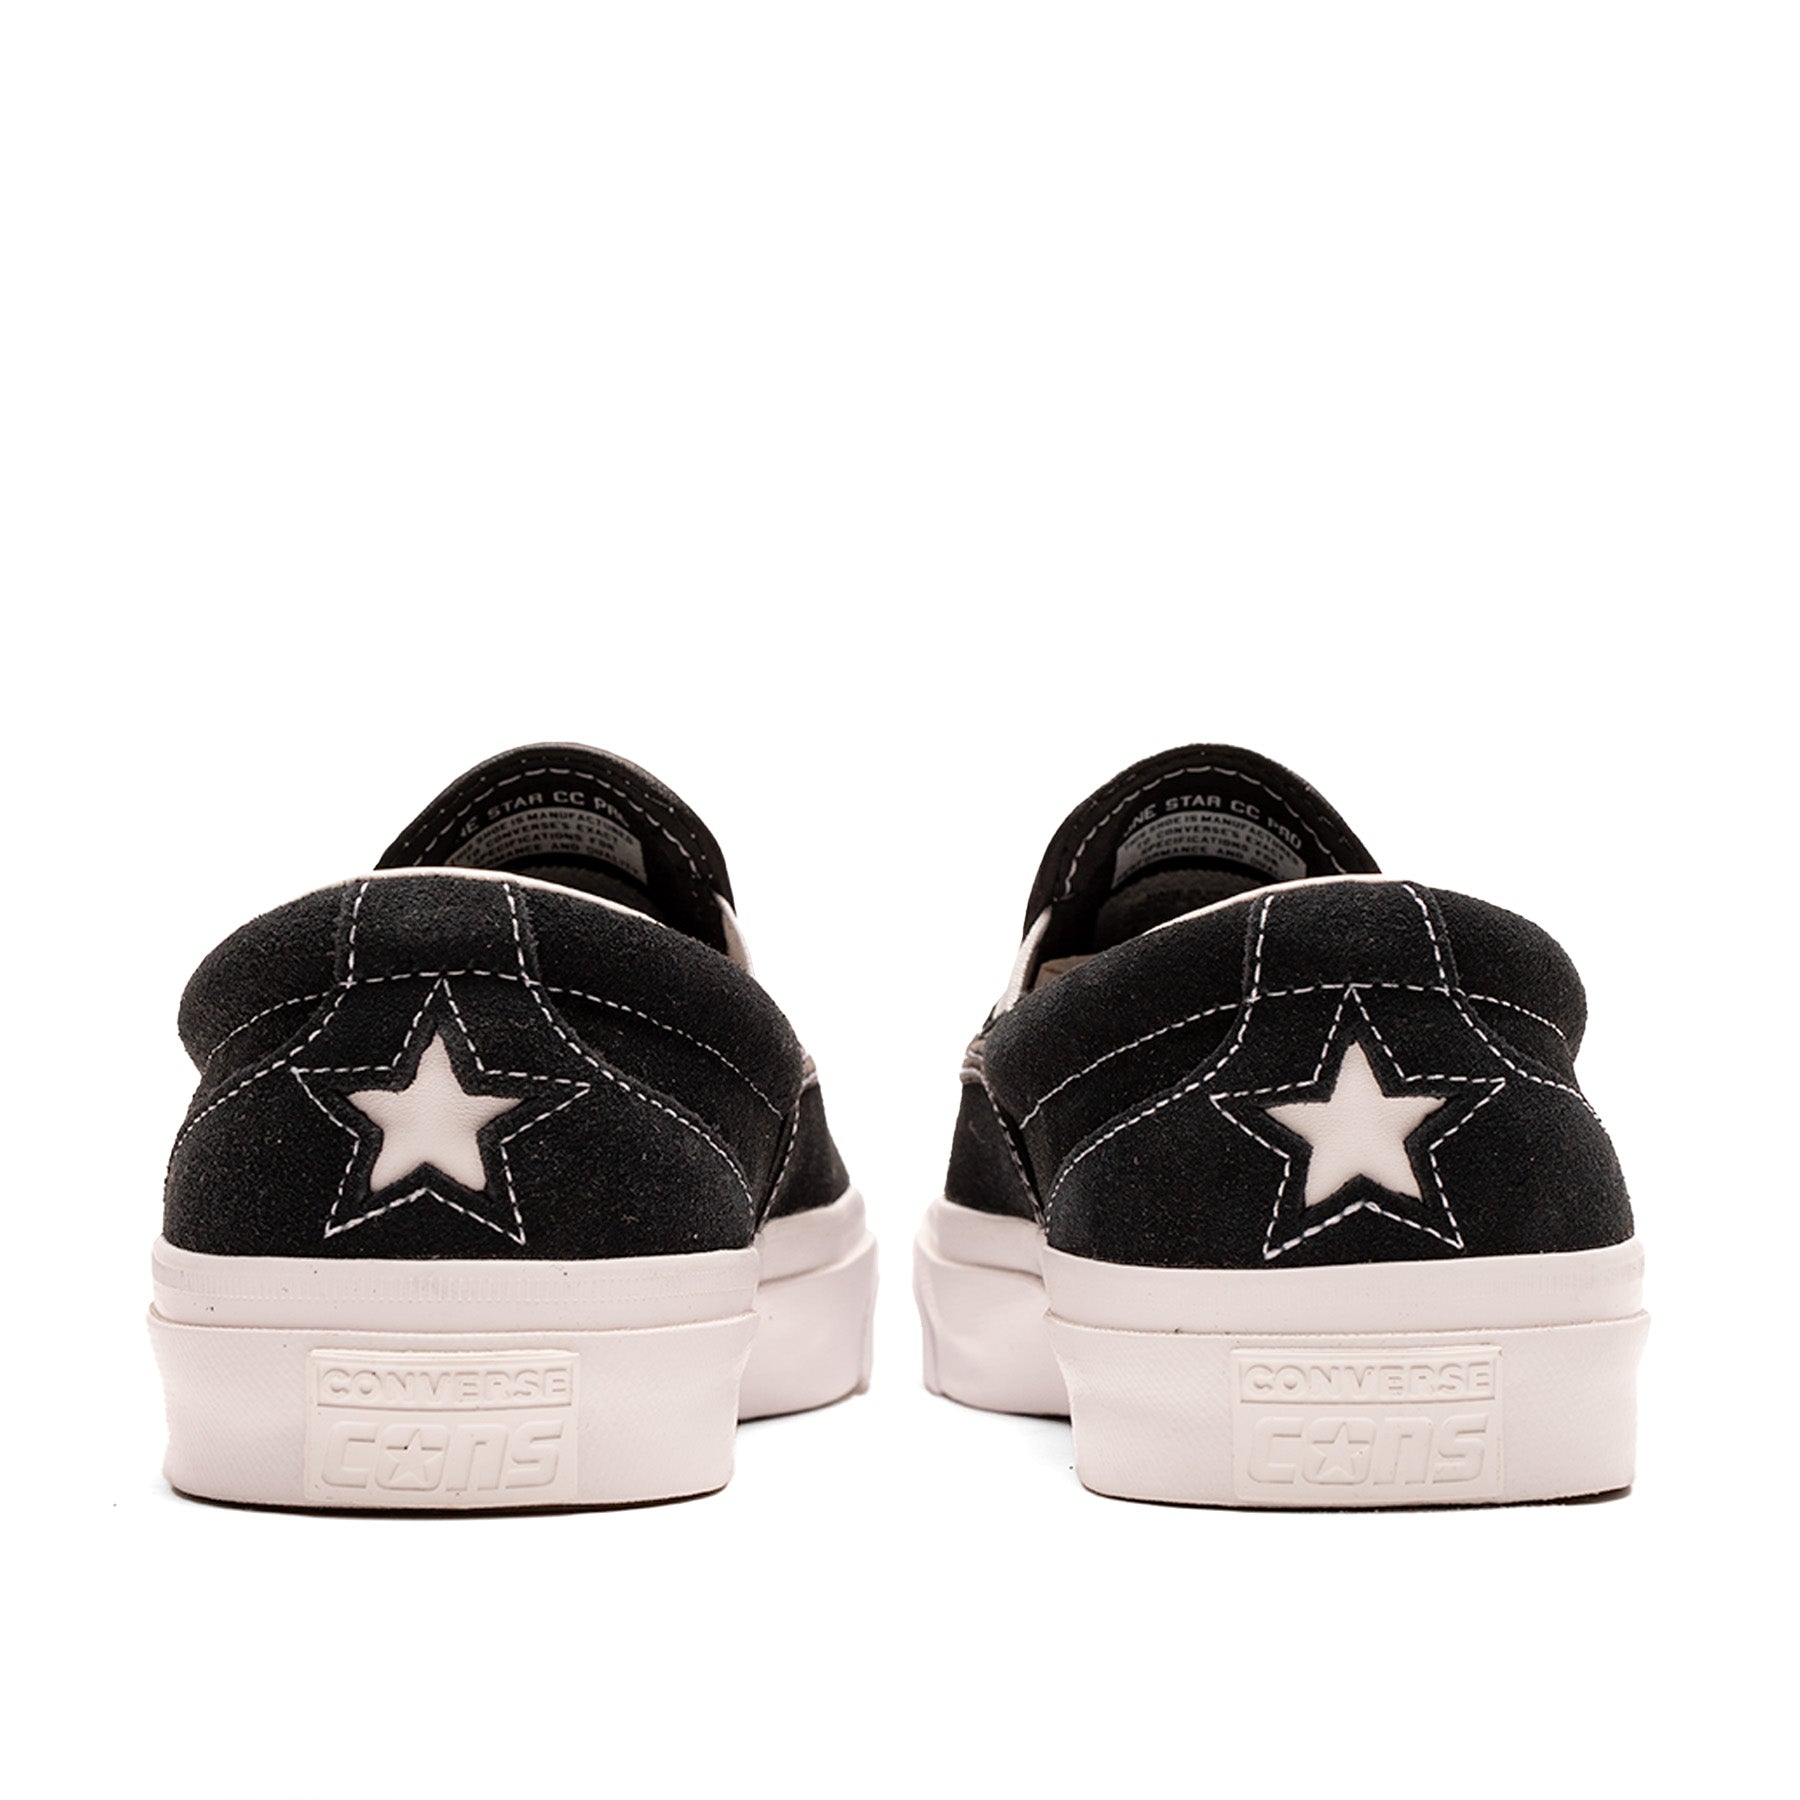 One Star CC Slip Pro Black/White/White Skateshop